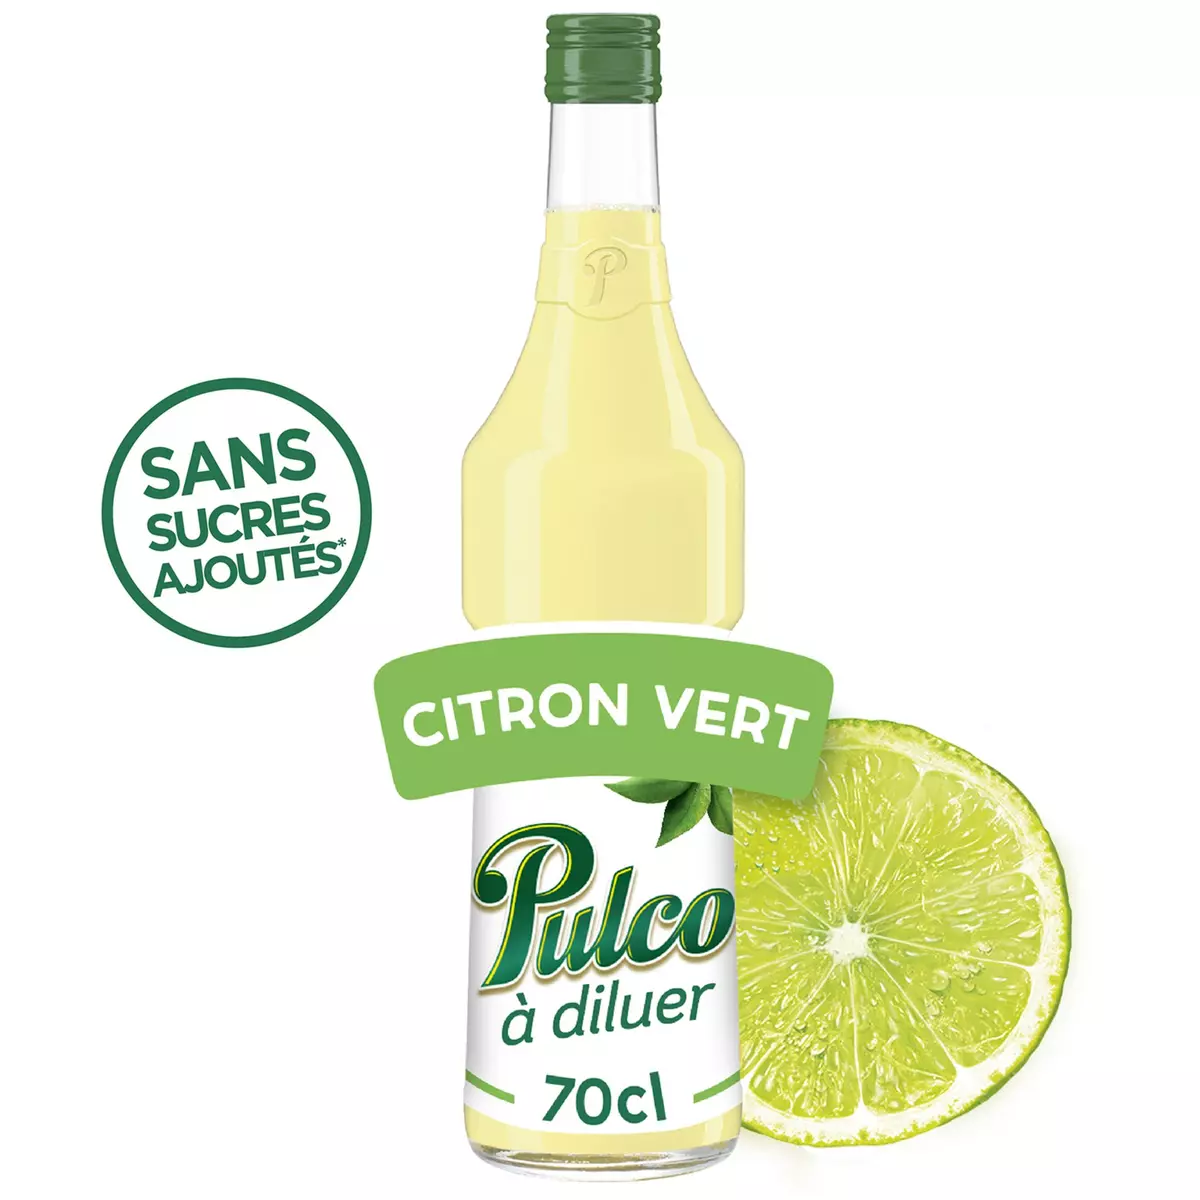 PULCO Concentré à diluer Citron vert sans sucres ajoutés 70cl